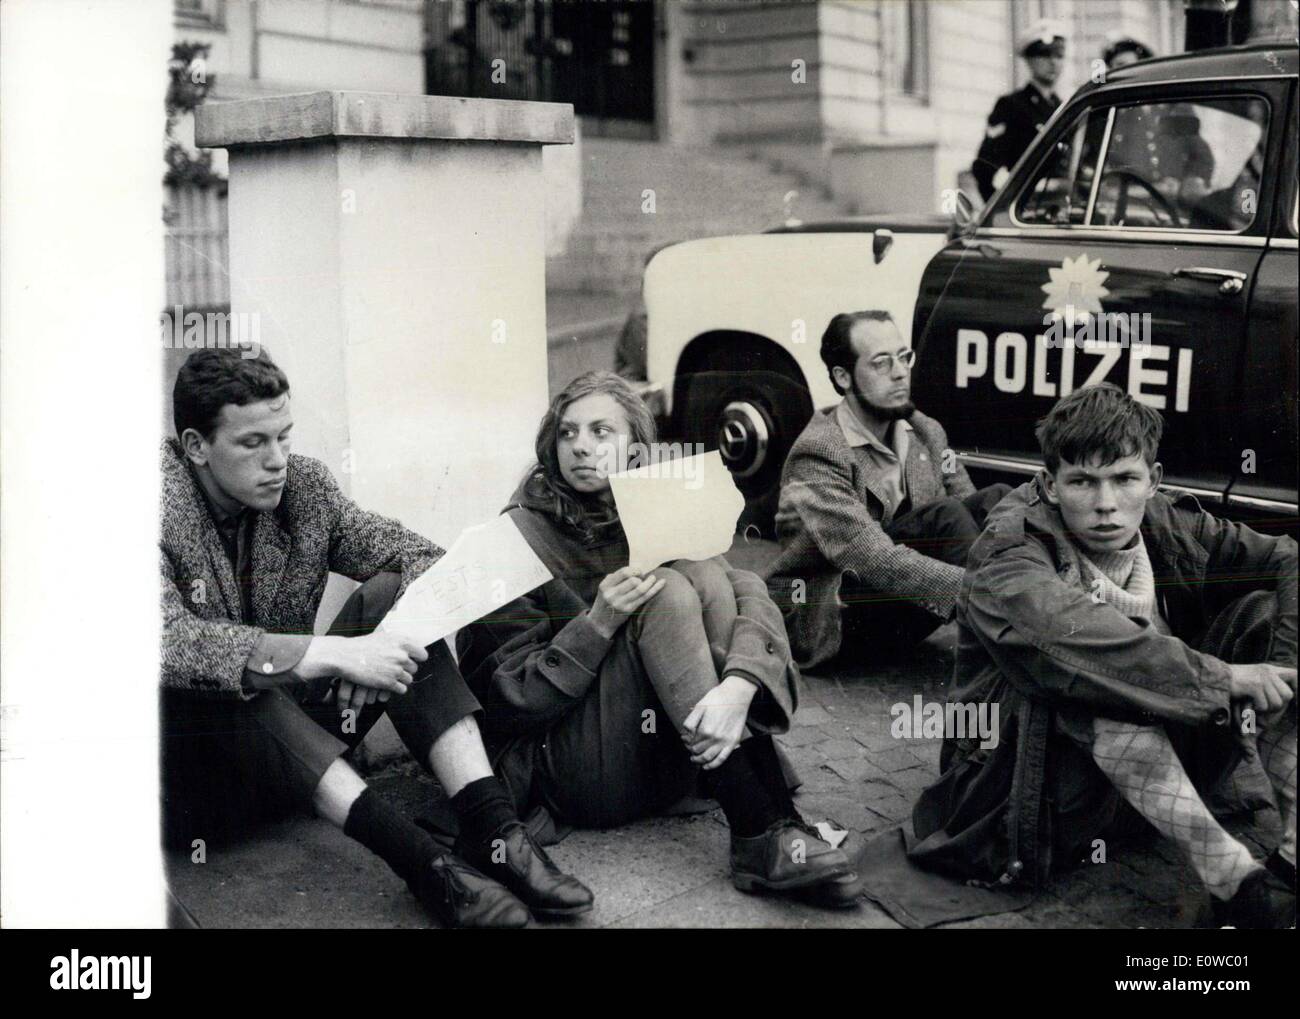 Apr. 24, 1962 - Sit-in sciopero di fronte al consolato USA di Amburgo.: 20 gli studenti svedesi ha iniziato a sit-in sciopero di fronte al consolato americano, a notte. Essi hanno espresso, in che modo la loro protesta contro la ripresa di energia atomica prove dagli americani. La polizia di Amburgo collocate alcune vetture prowl davanti al consolato, per evitare eventuali incidenti. La foto mostra gli studenti svedesi si aggirano tra le vetture di fronte al Consolato Americano di Amburgo. Foto Stock